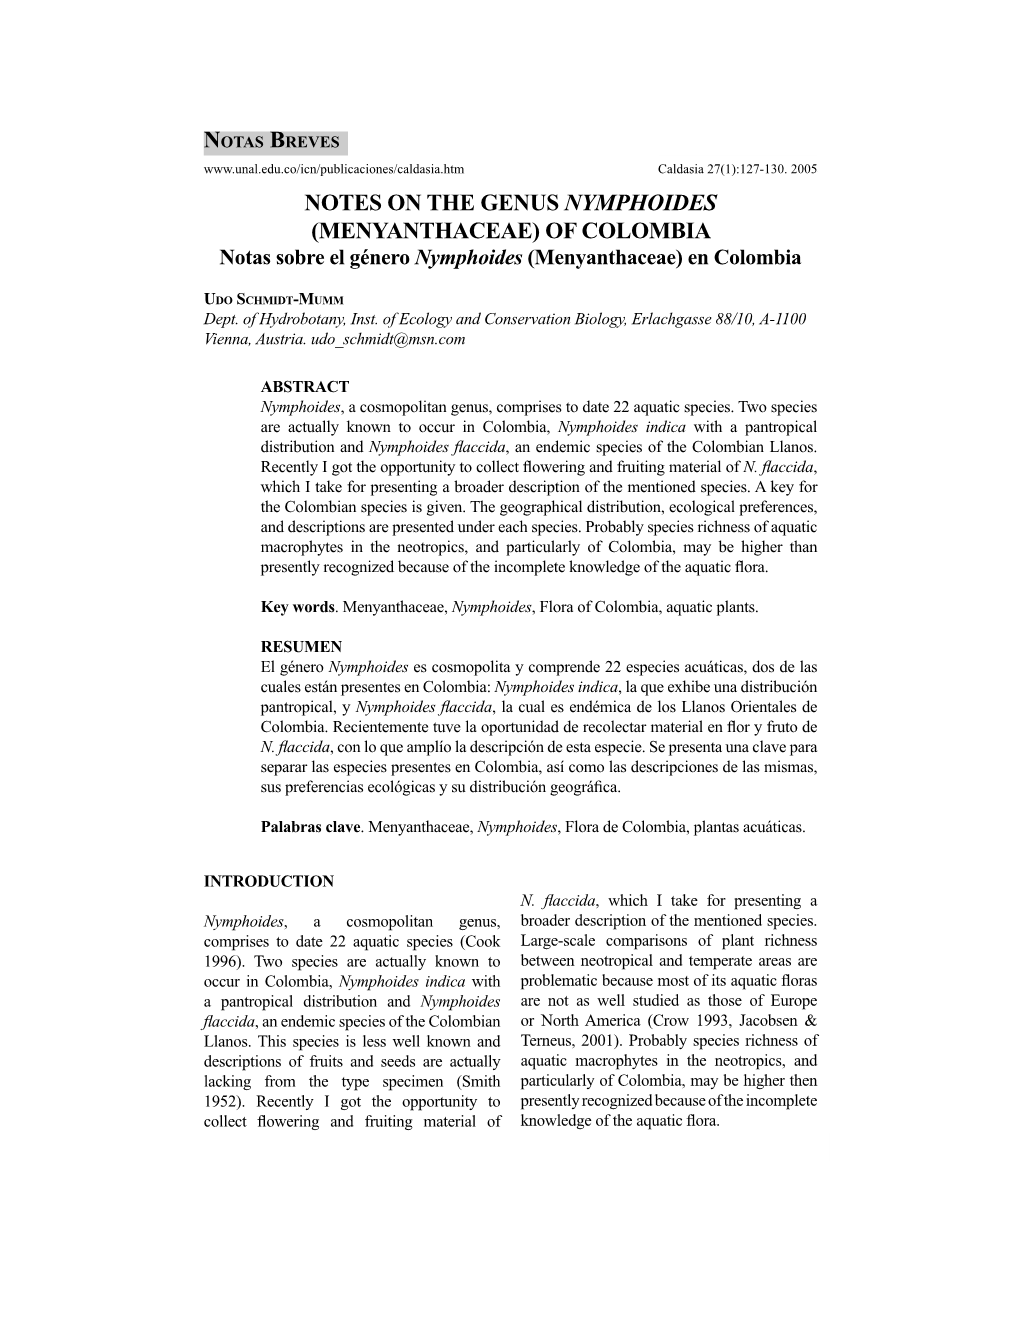 NOTES on the GENUS NYMPHOIDES (MENYANTHACEAE) of COLOMBIA Notas Sobre El Género Nymphoides (Menyanthaceae) En Colombia